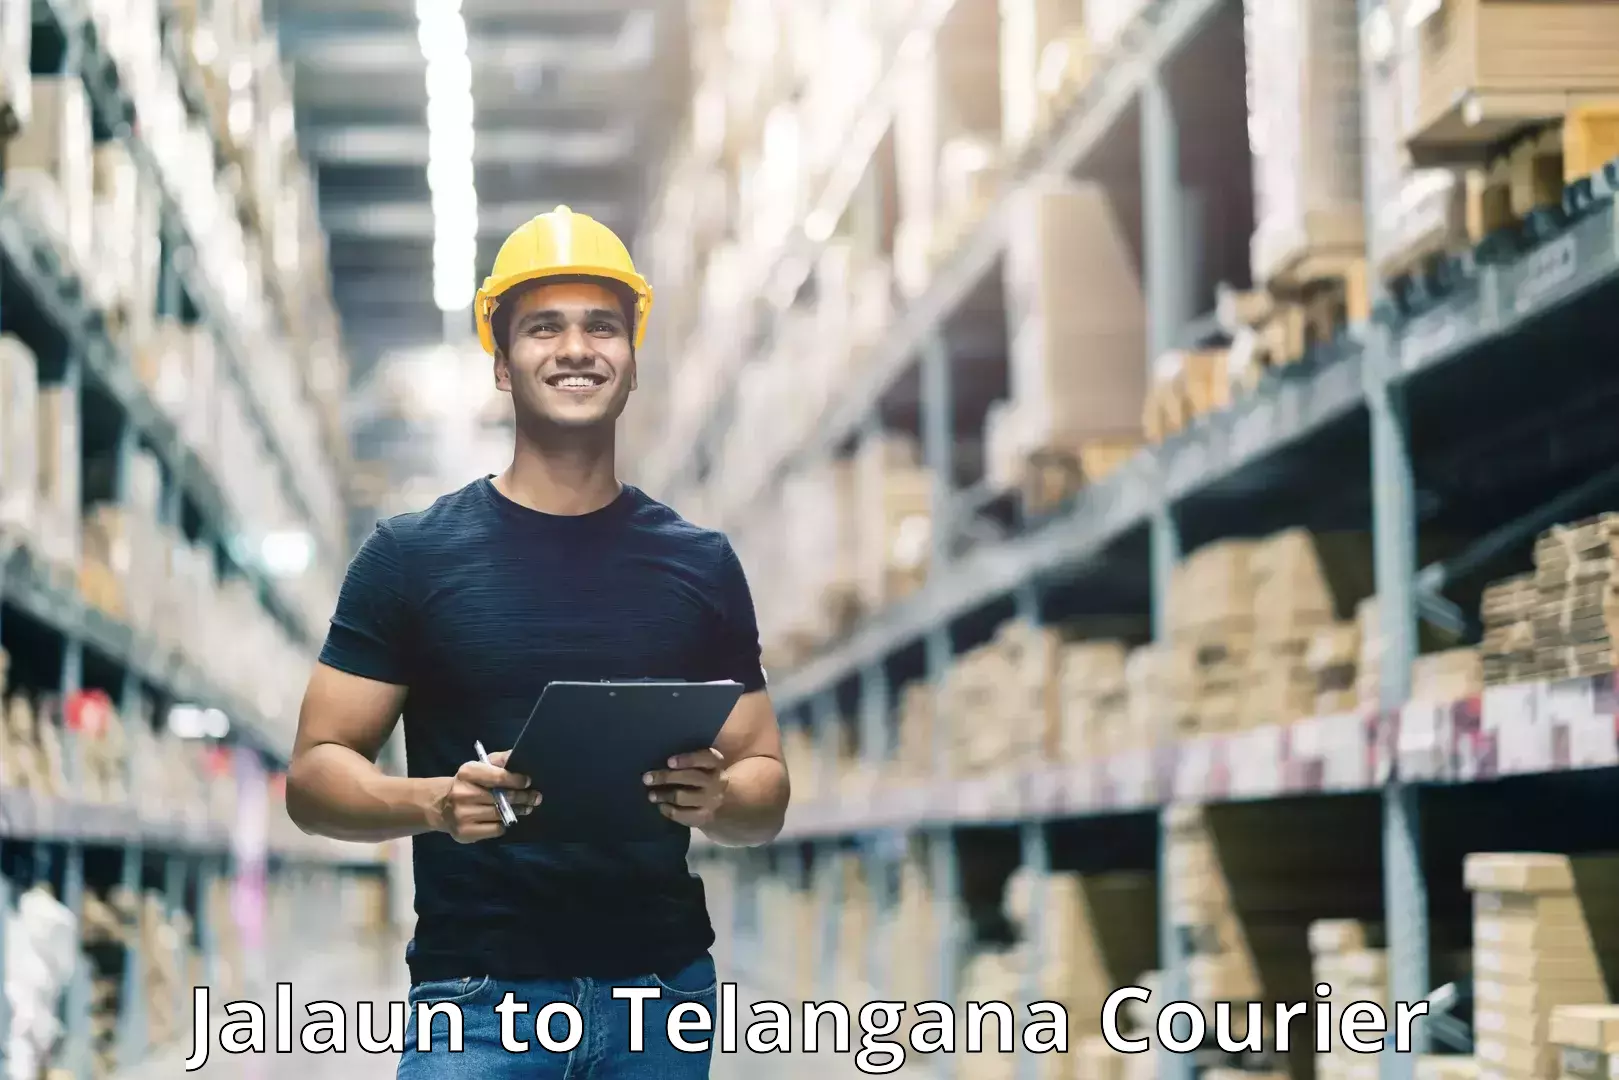 Next-generation courier services Jalaun to Telangana